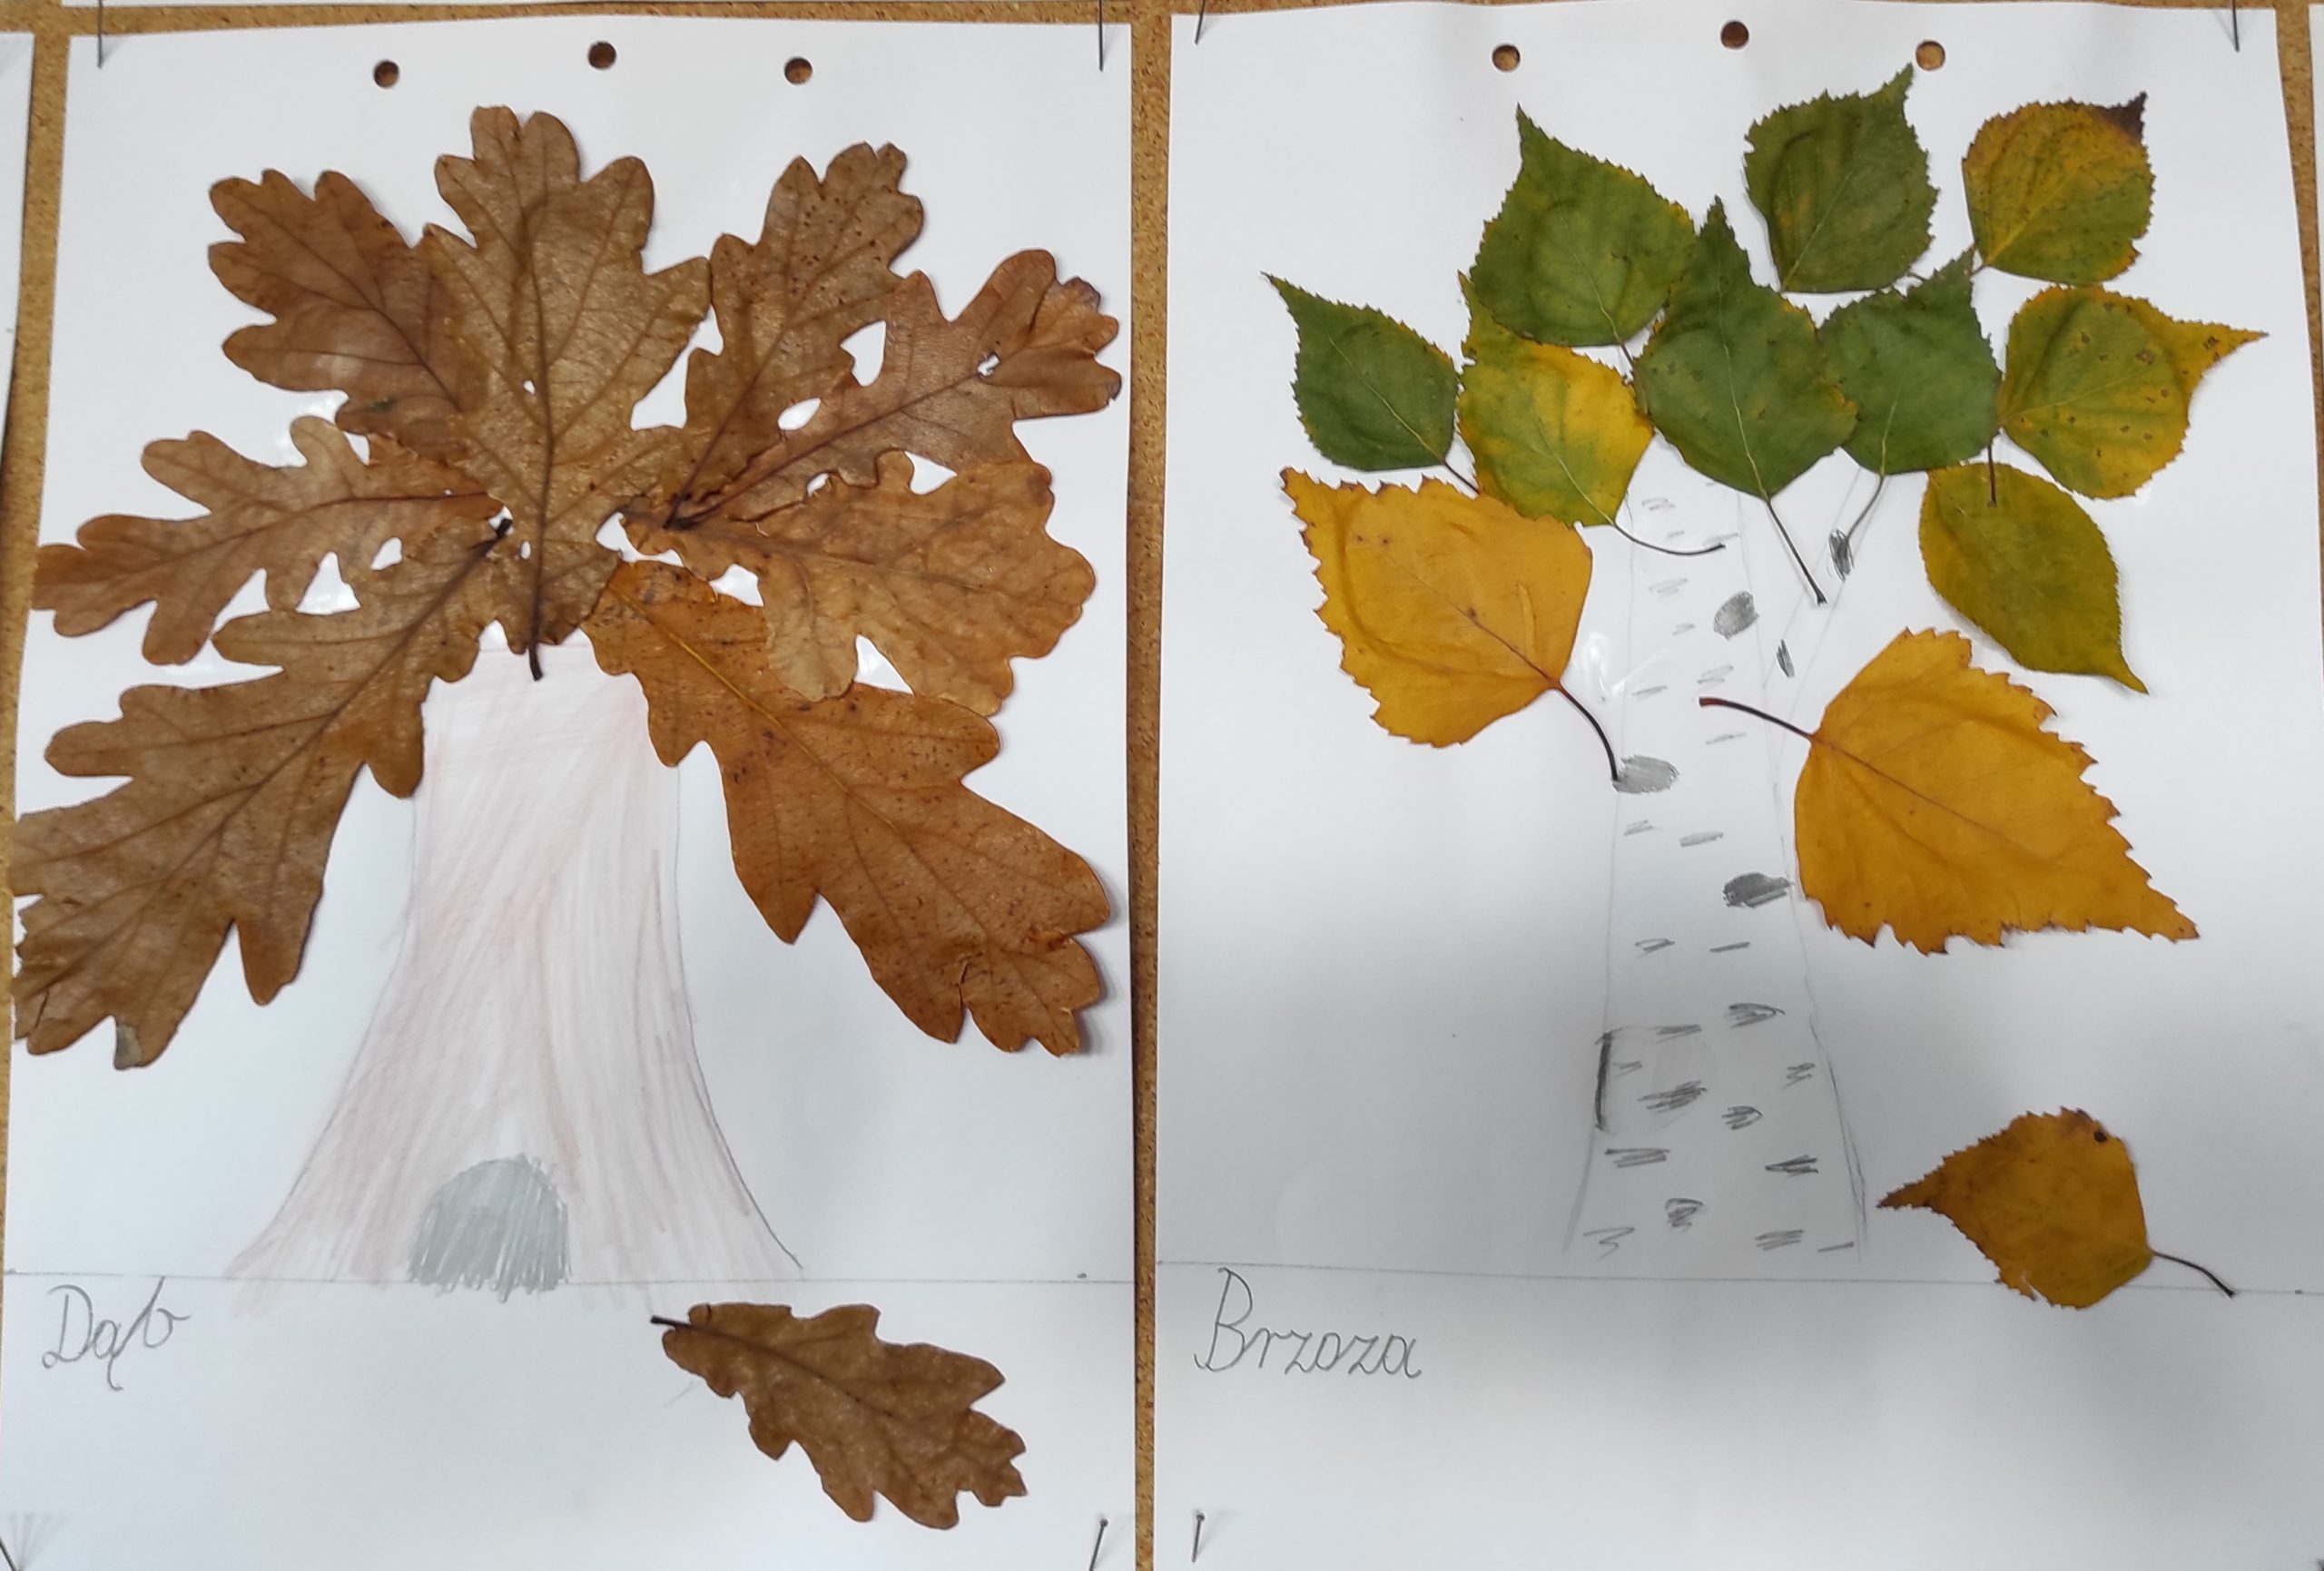  Dwie prace plastyczne. Z lewej strony dąb, z prawej brzoza. Pień drzewa narysowany, korona wyklejona suchymi liśćmi dębu i brzozy.